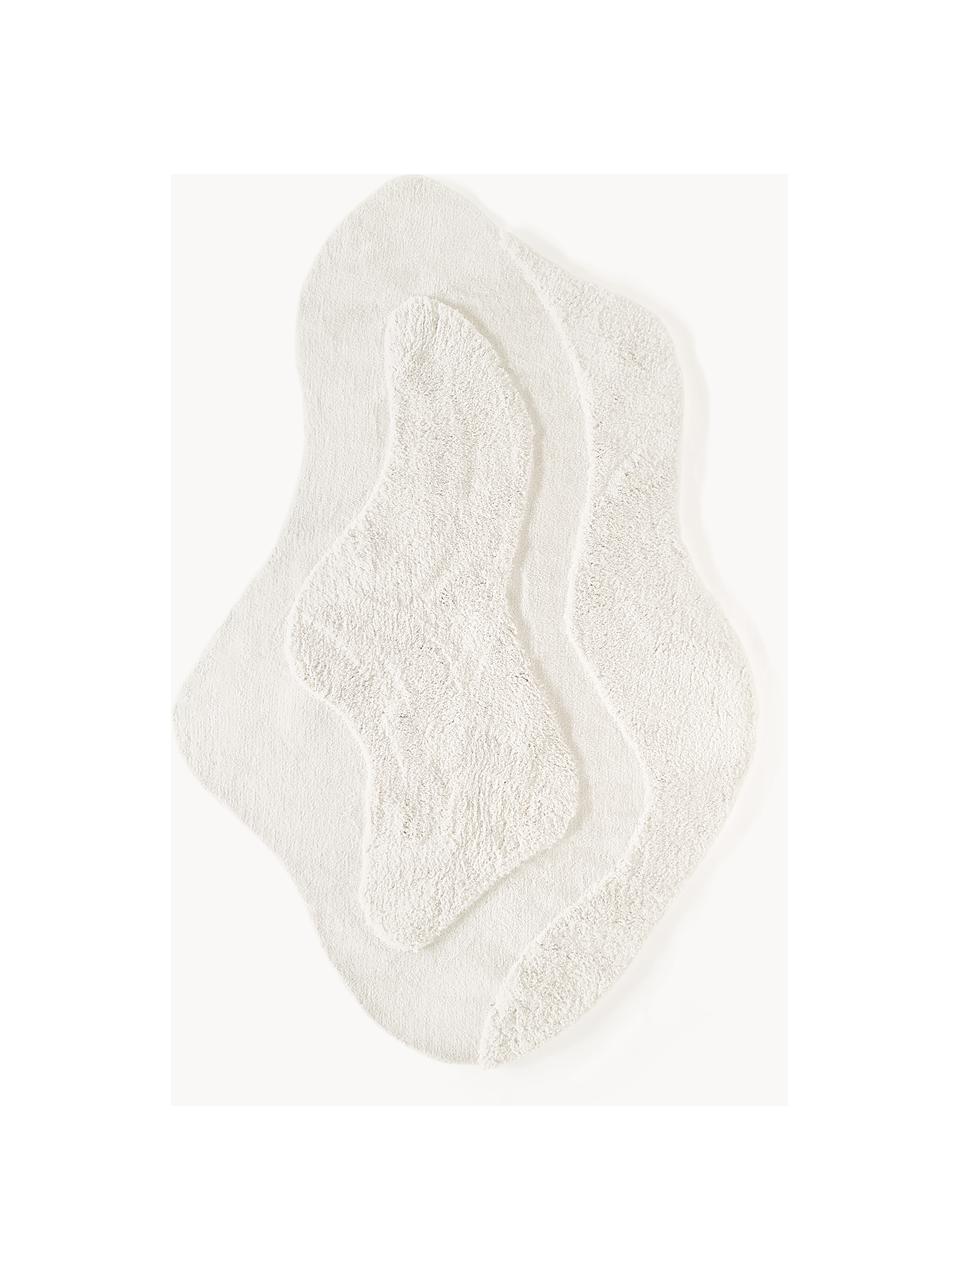 Načechraný koberec v organickém tvaru Kyla, Bílá, Š 160 cm, D 230 cm (velikost M)